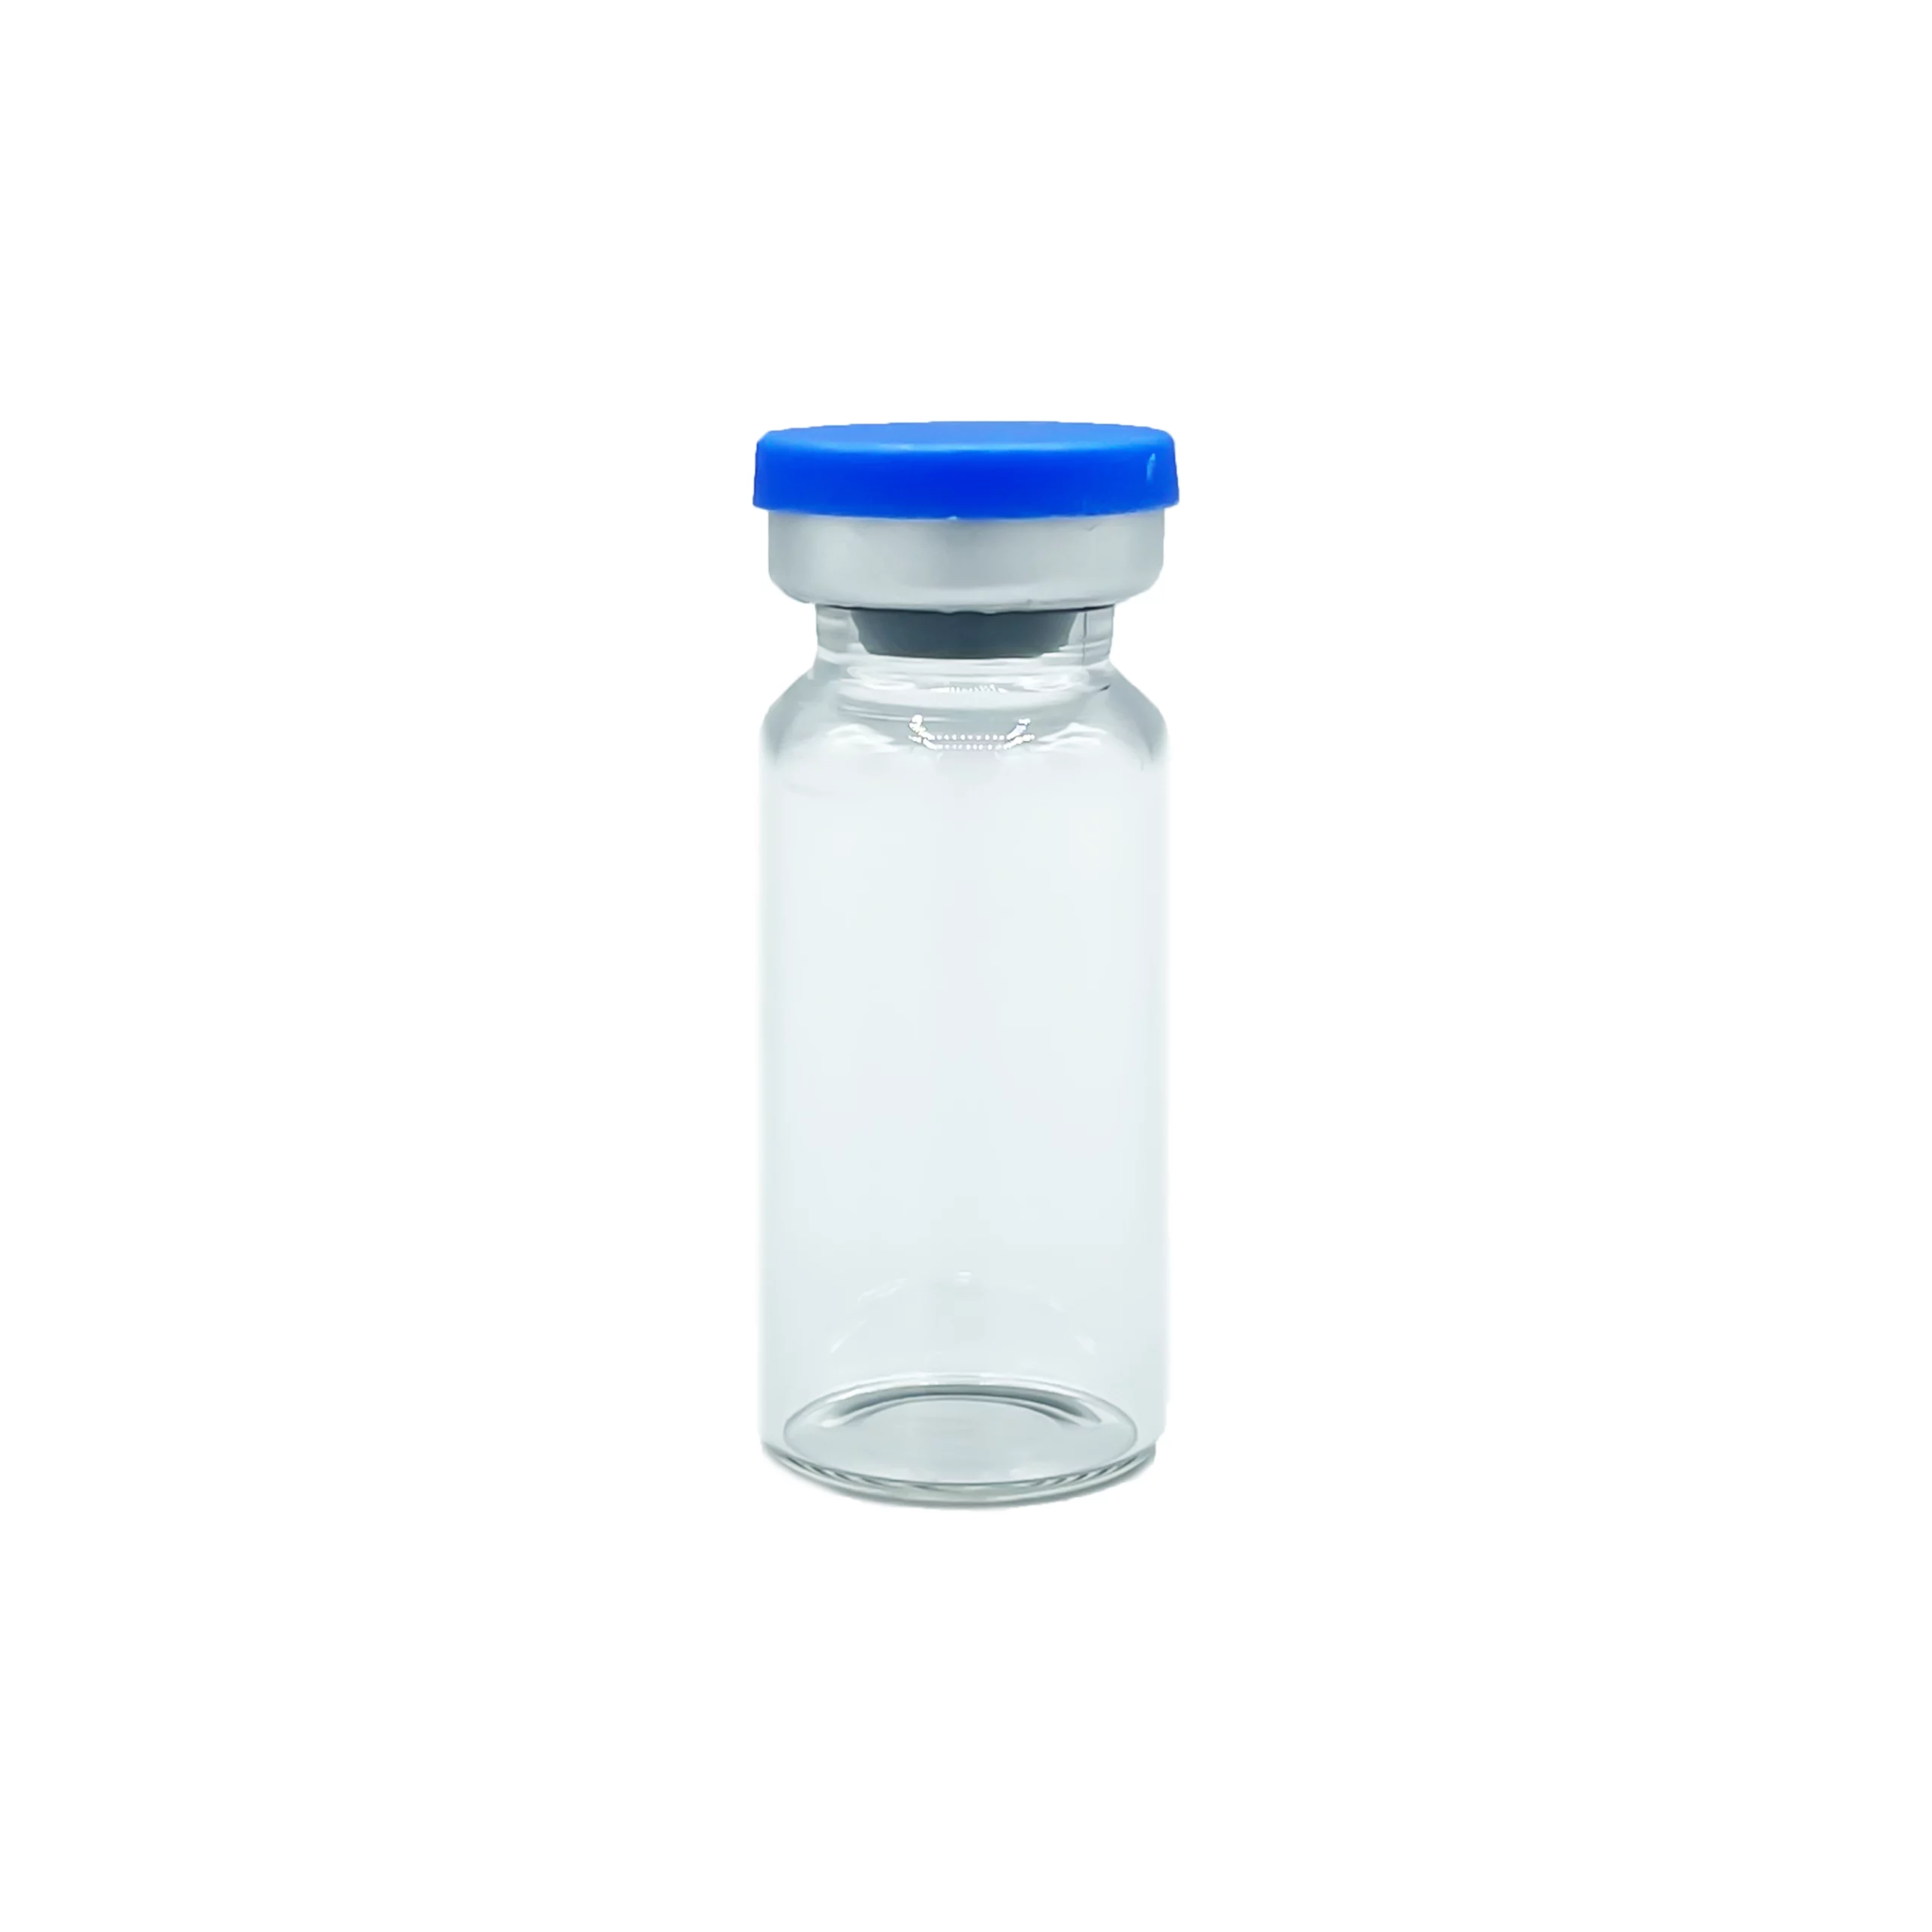 VIAL - Multi dose glass vial STERILE